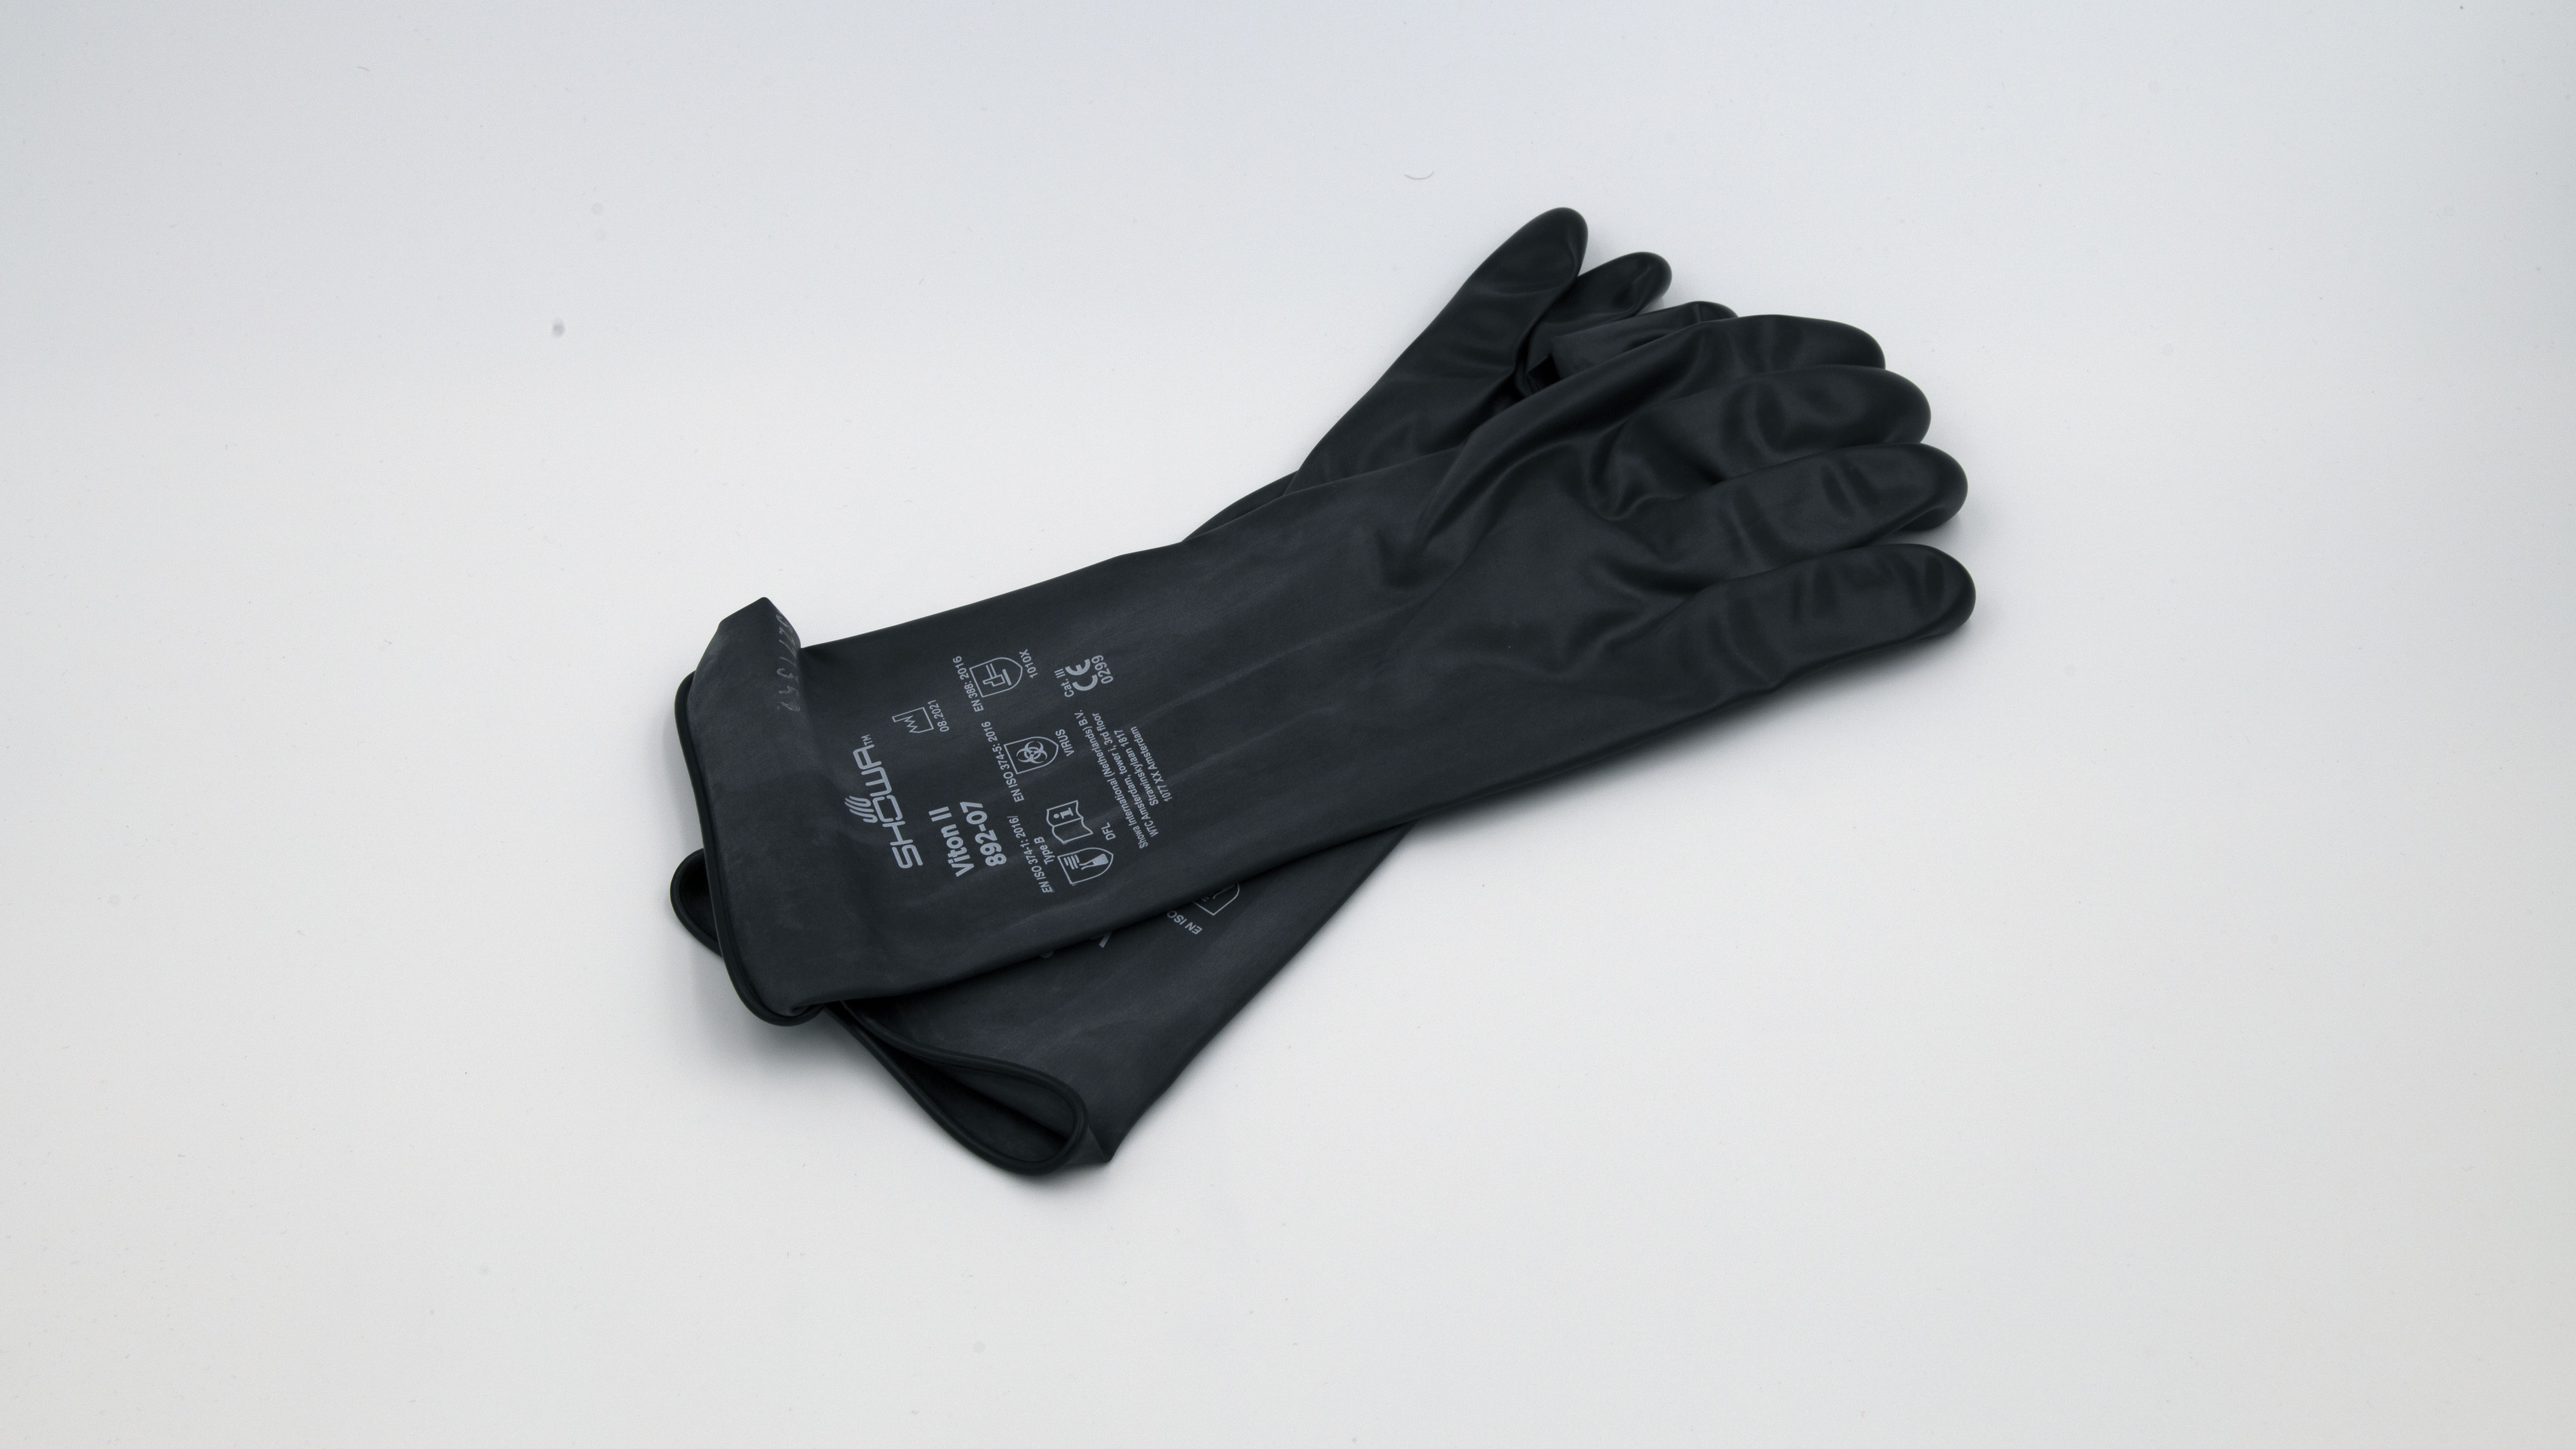 Black rubber gloves on white background